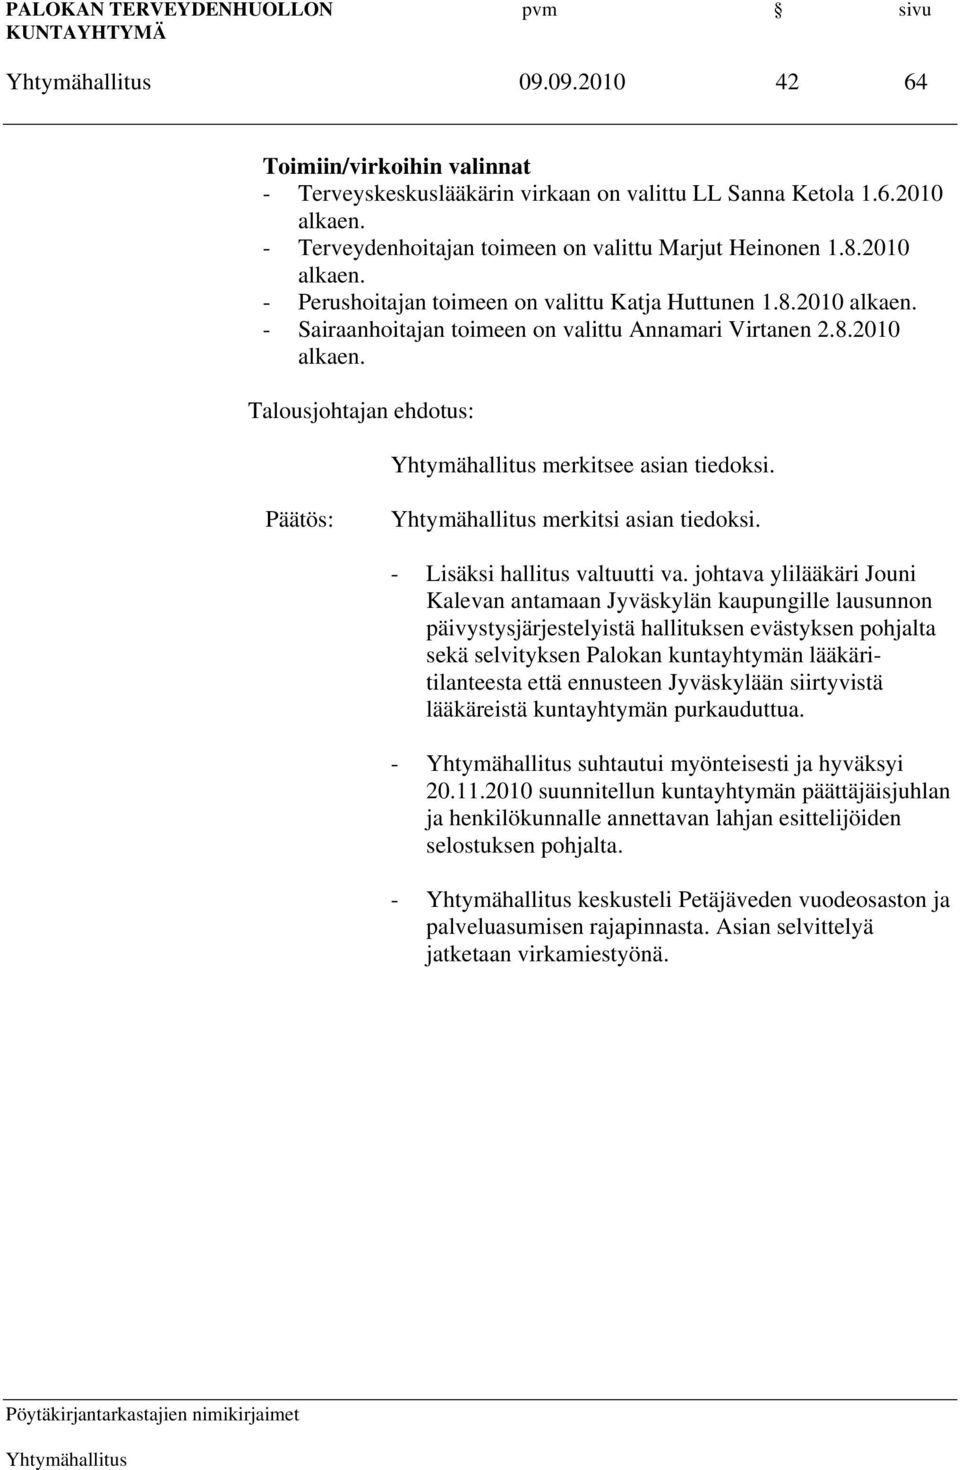 johtava ylilääkäri Jouni Kalevan antamaan Jyväskylän kaupungille lausunnon päivystysjärjestelyistä hallituksen evästyksen pohjalta sekä selvityksen Palokan kuntayhtymän lääkäritilanteesta että